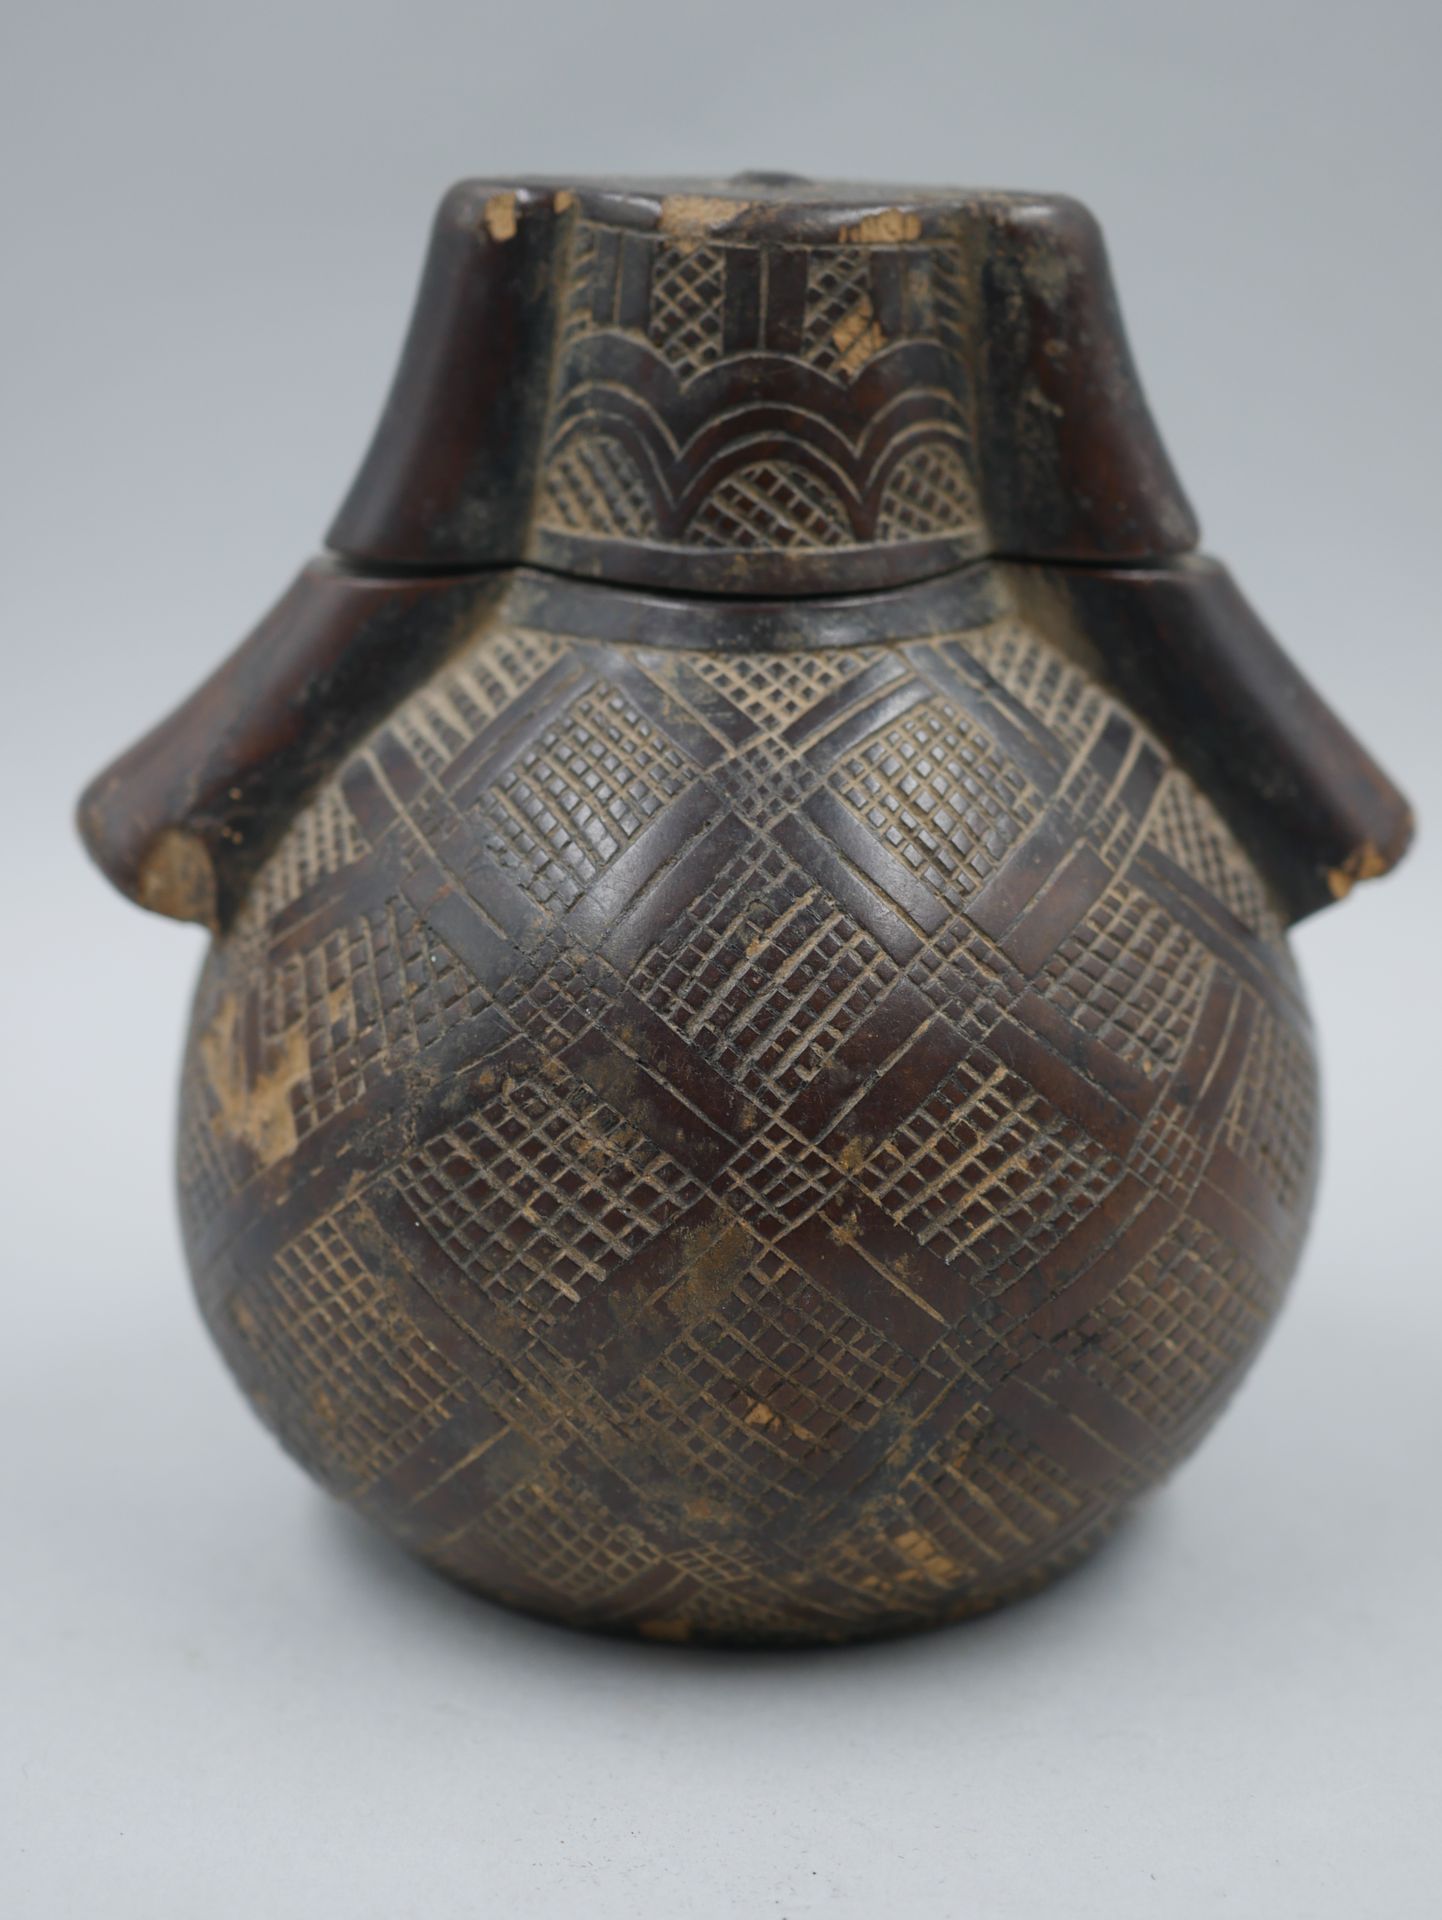 Null 冈比亚民主共和国。古典形状的木制火药瓶，装饰有烟熏制的几何图案。有深色的光泽。高度：11厘米。(事故）。)

出处：法国私人收藏。

从布鲁塞尔P. &hellip;